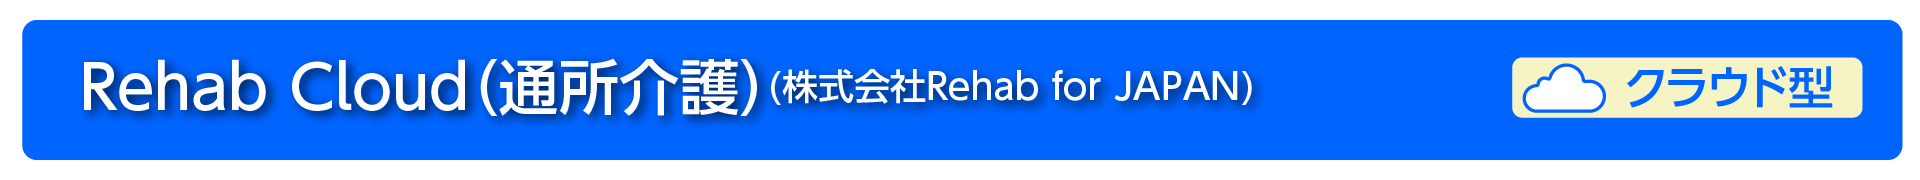 RehabCloud/